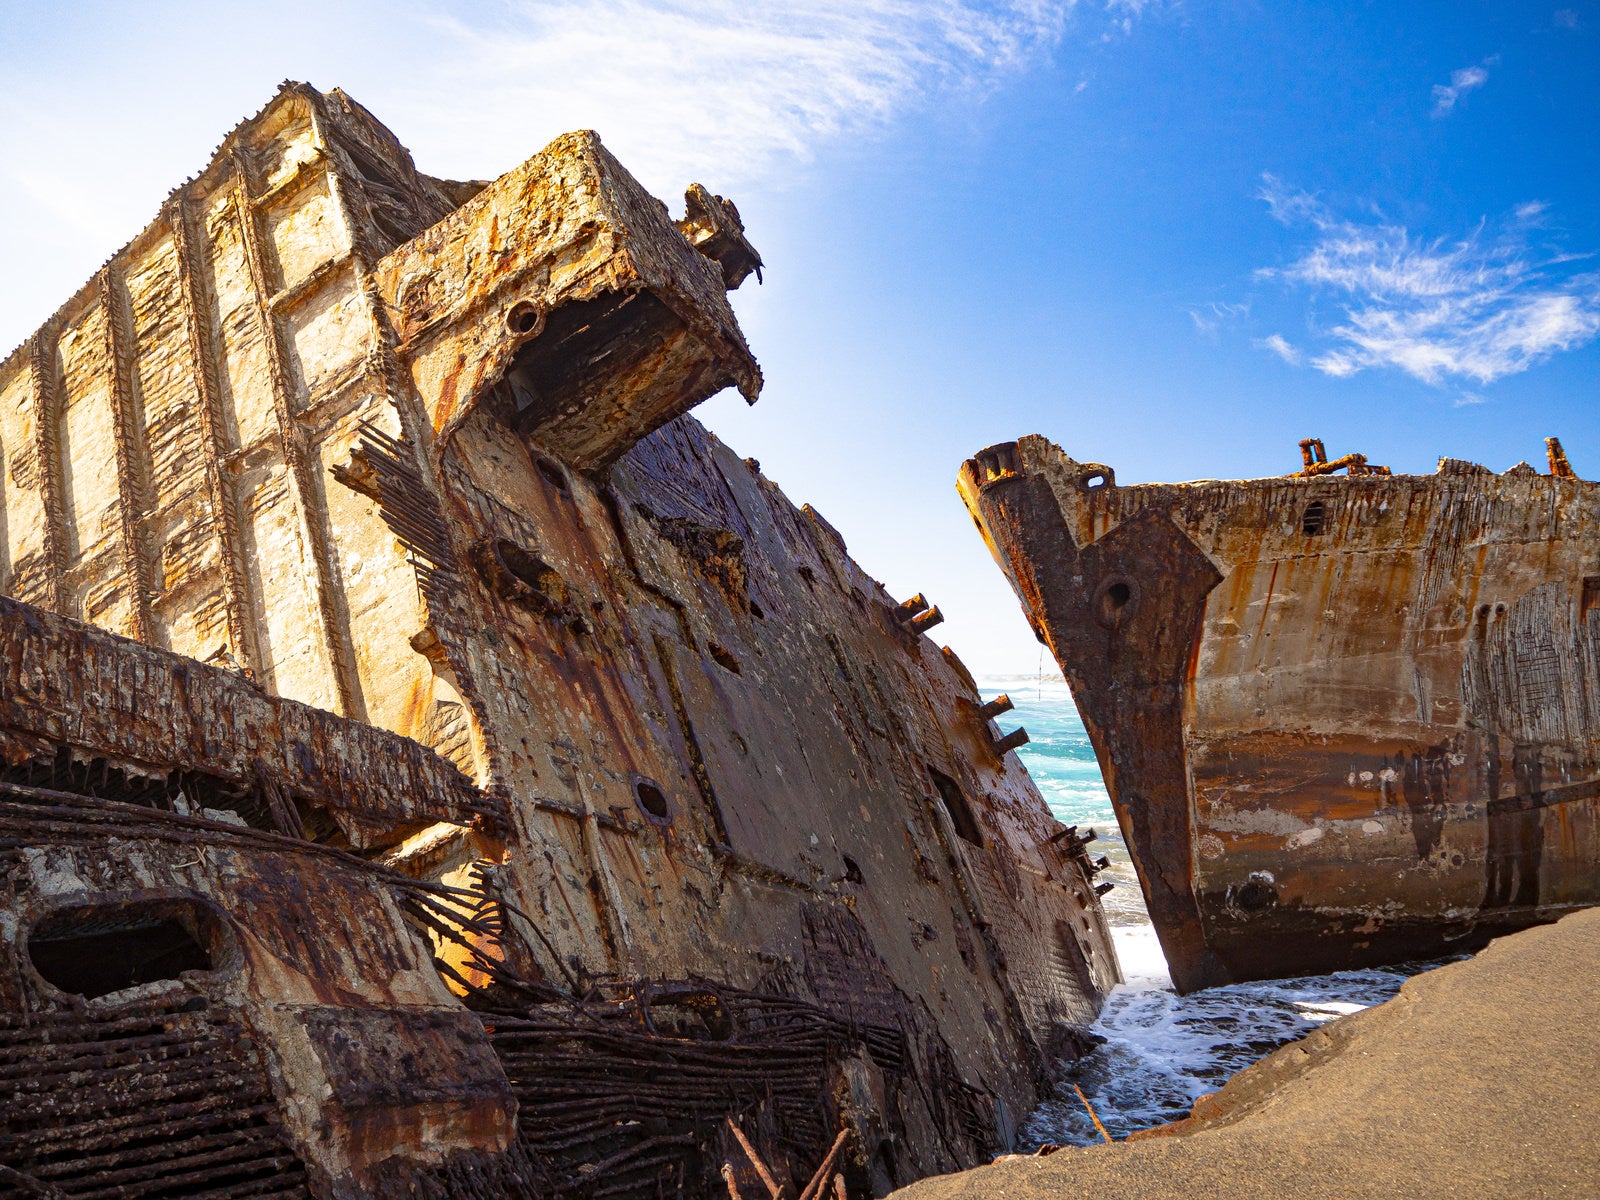 「千鳥ヶ浜の波打ち際に横たわる船の残骸」の写真